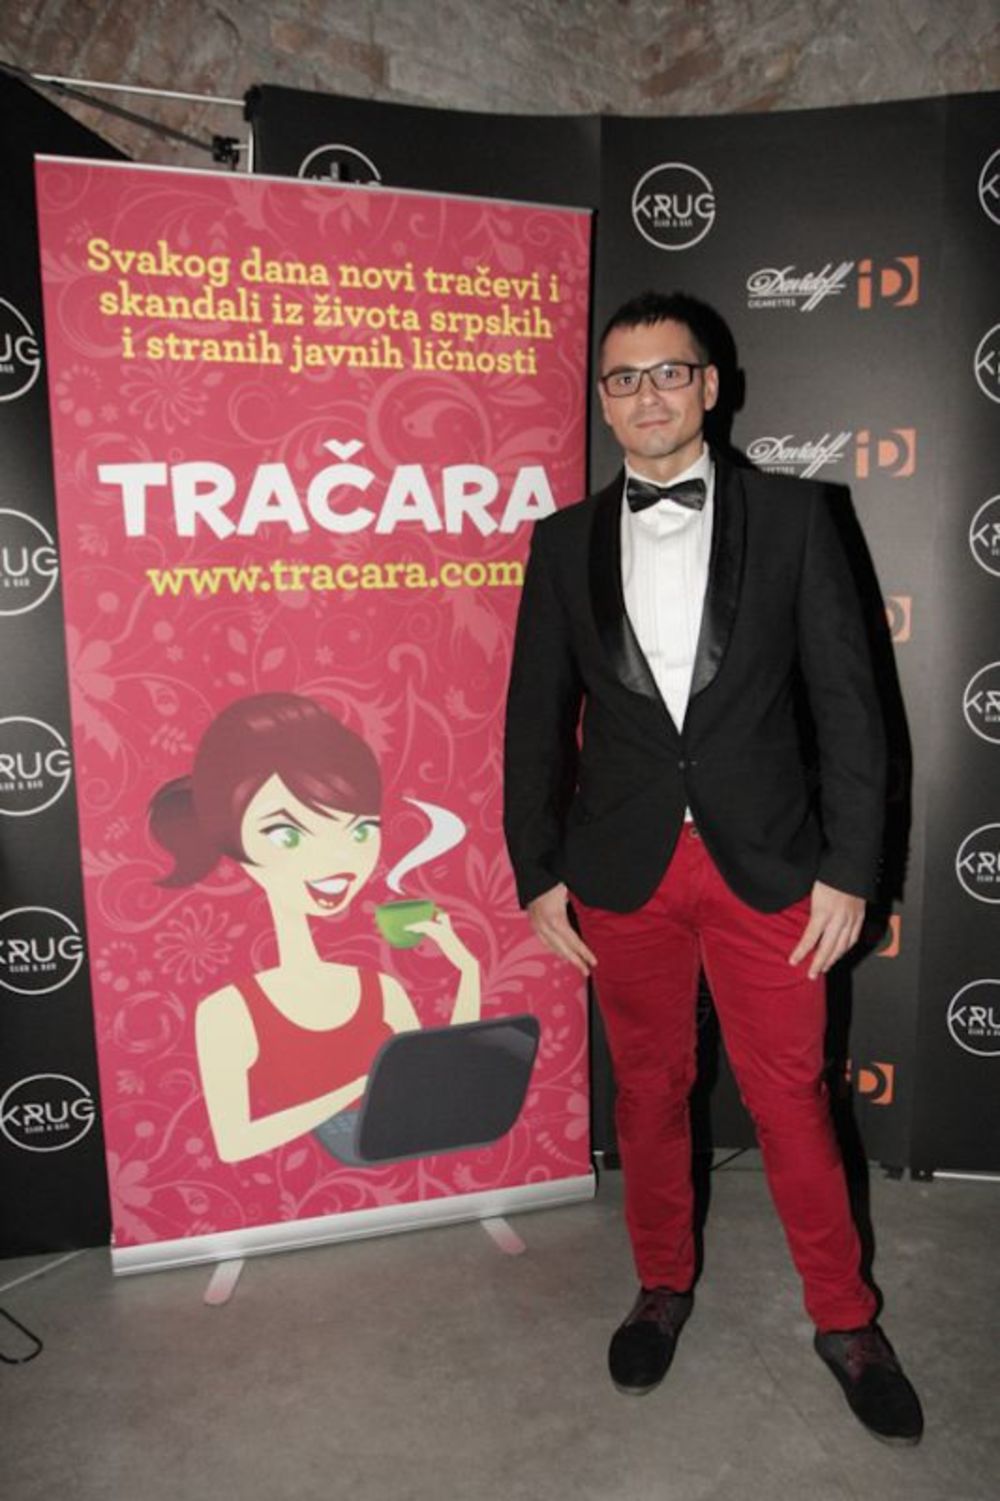 Prvi srpski internet tabloid, Tračara.com proslavio je u sredu, sedmog novembra, u klubu Krug četvrti rođendan. Goste slavljeničke žurke zabavljao je DJ Me-High-Low, kao i bend Top Kruz Tom Gun, dok je za vreme partyja upriličena i nagradna igra, uz pompezno i